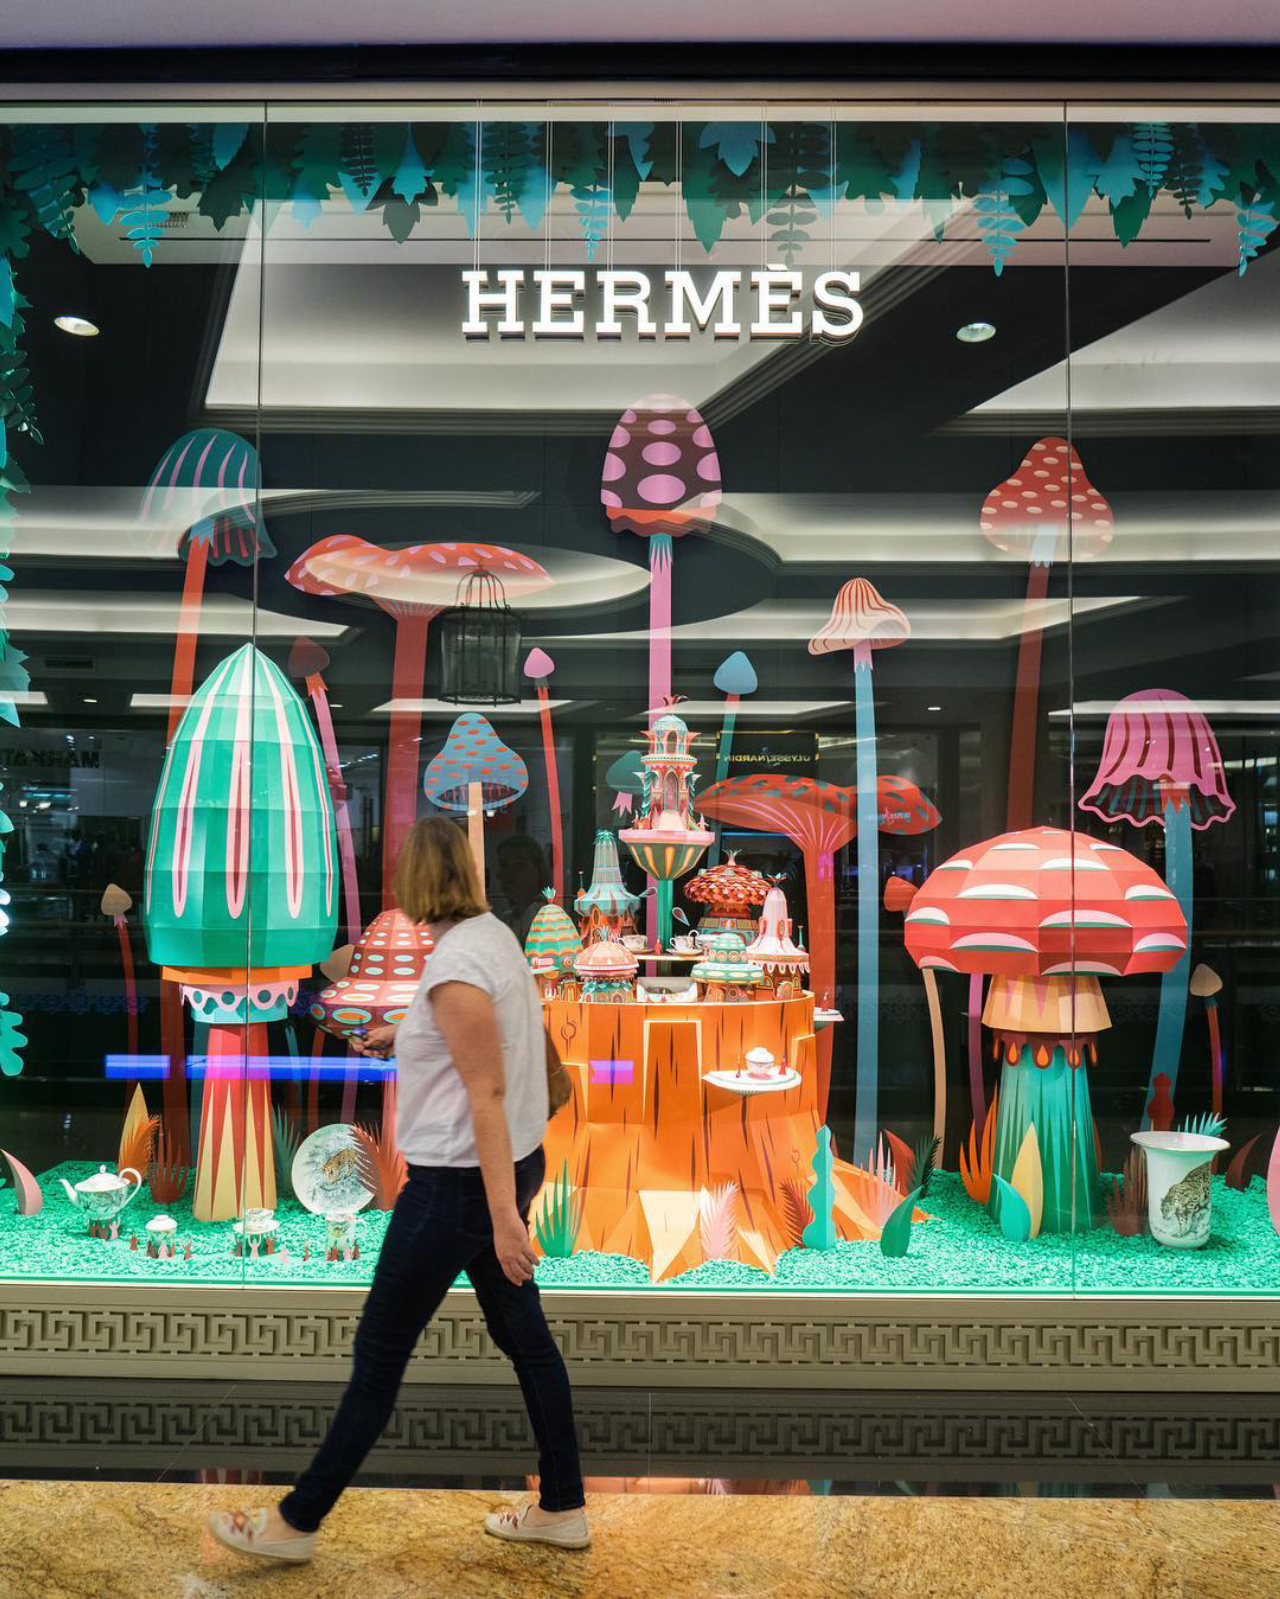 Vitrine da Hermès, nos Emirados Árabes Unidos.  